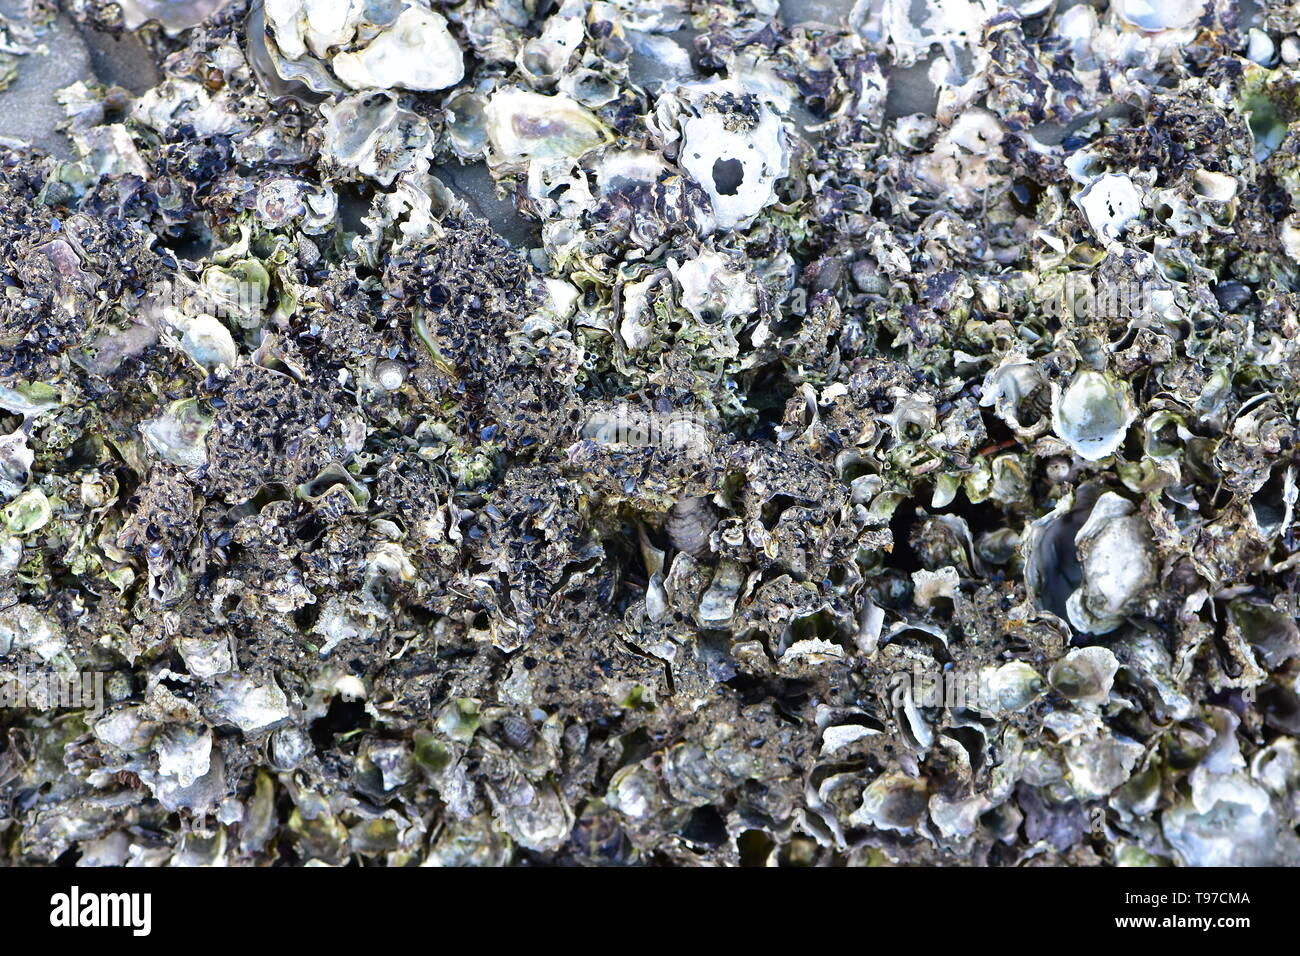 Varias conchas de mar unidos entre sí formando sustancia rocoso irregular con numerosos puntos y bordes afilados. Foto de stock